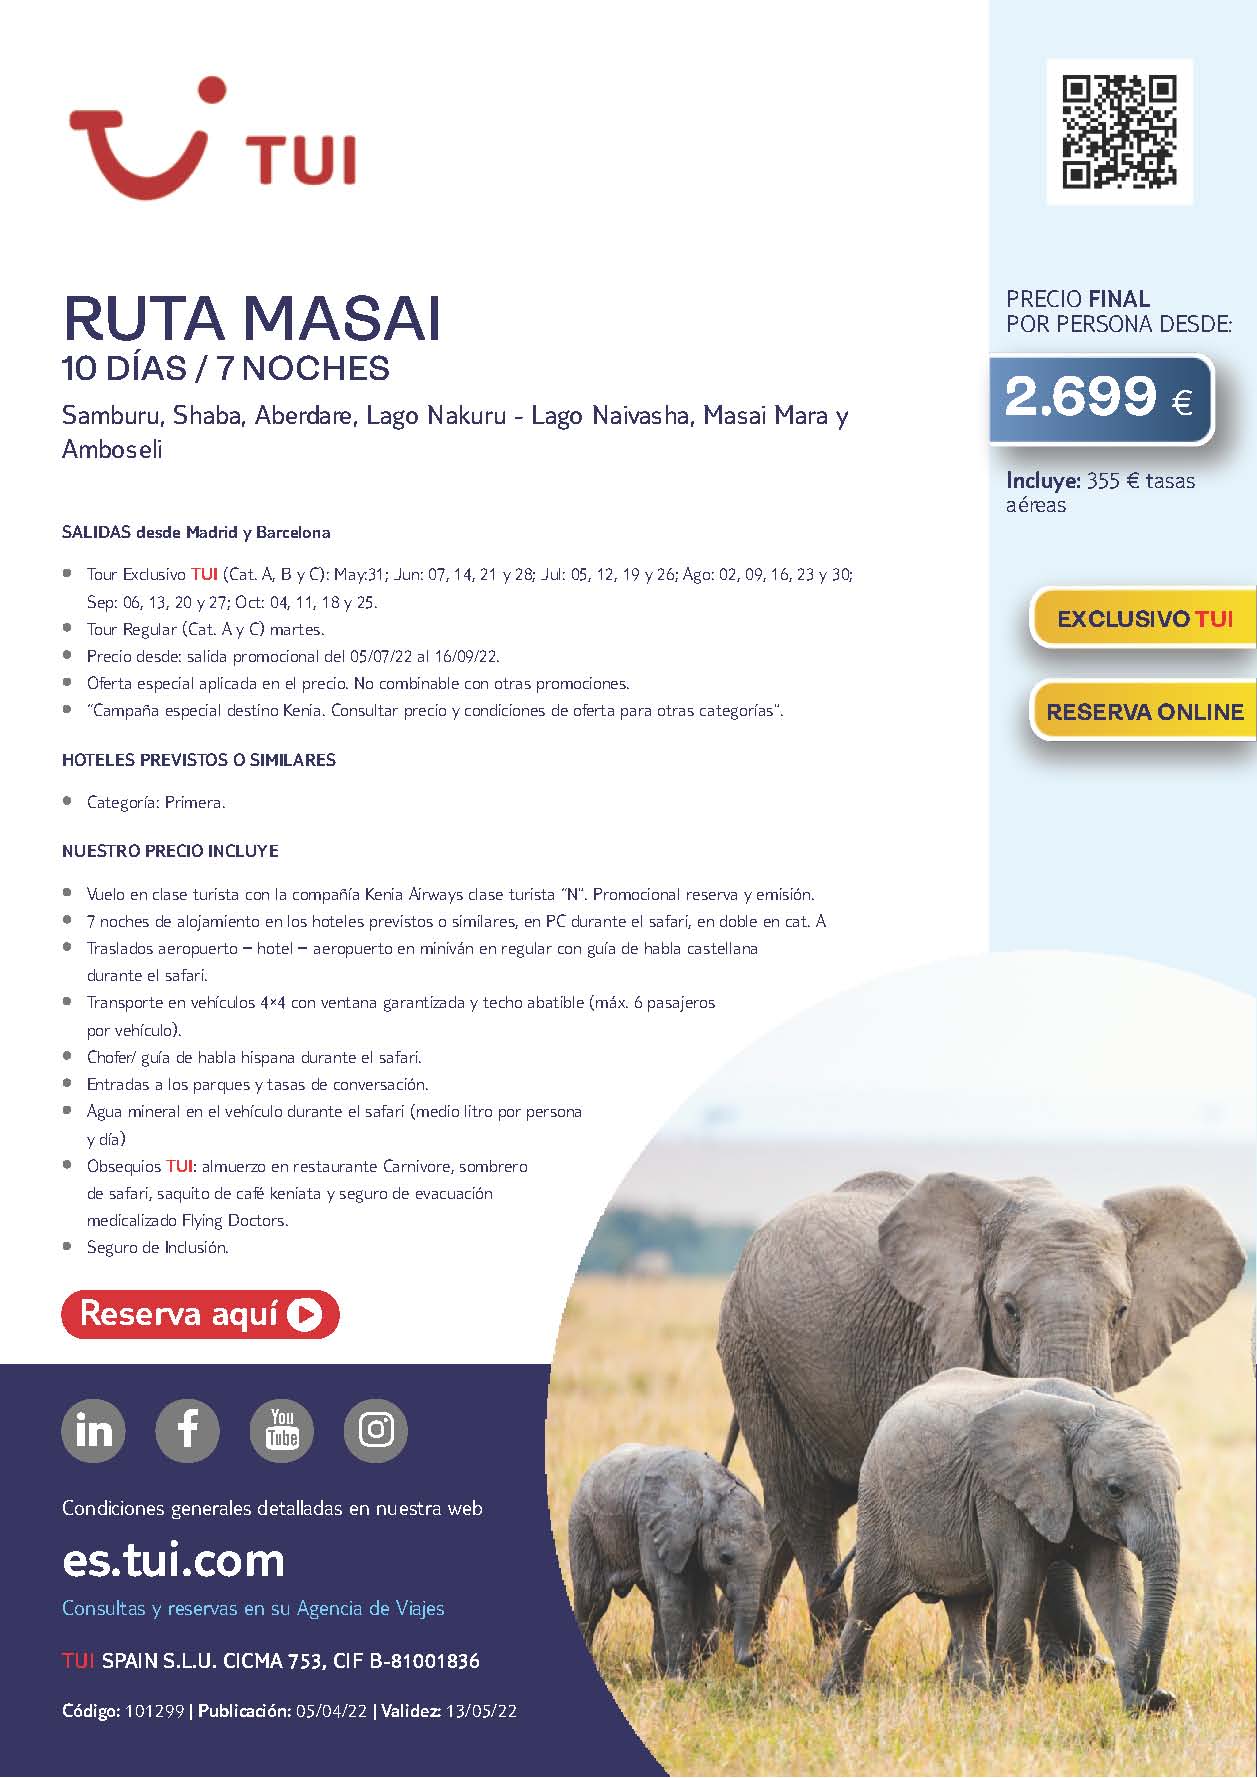 Oferta TUI Ruta Masai Kenia 10 dias Junio a Octubre 2022 salidas desde Madrid y Barcelona vuelos Kenia Airways